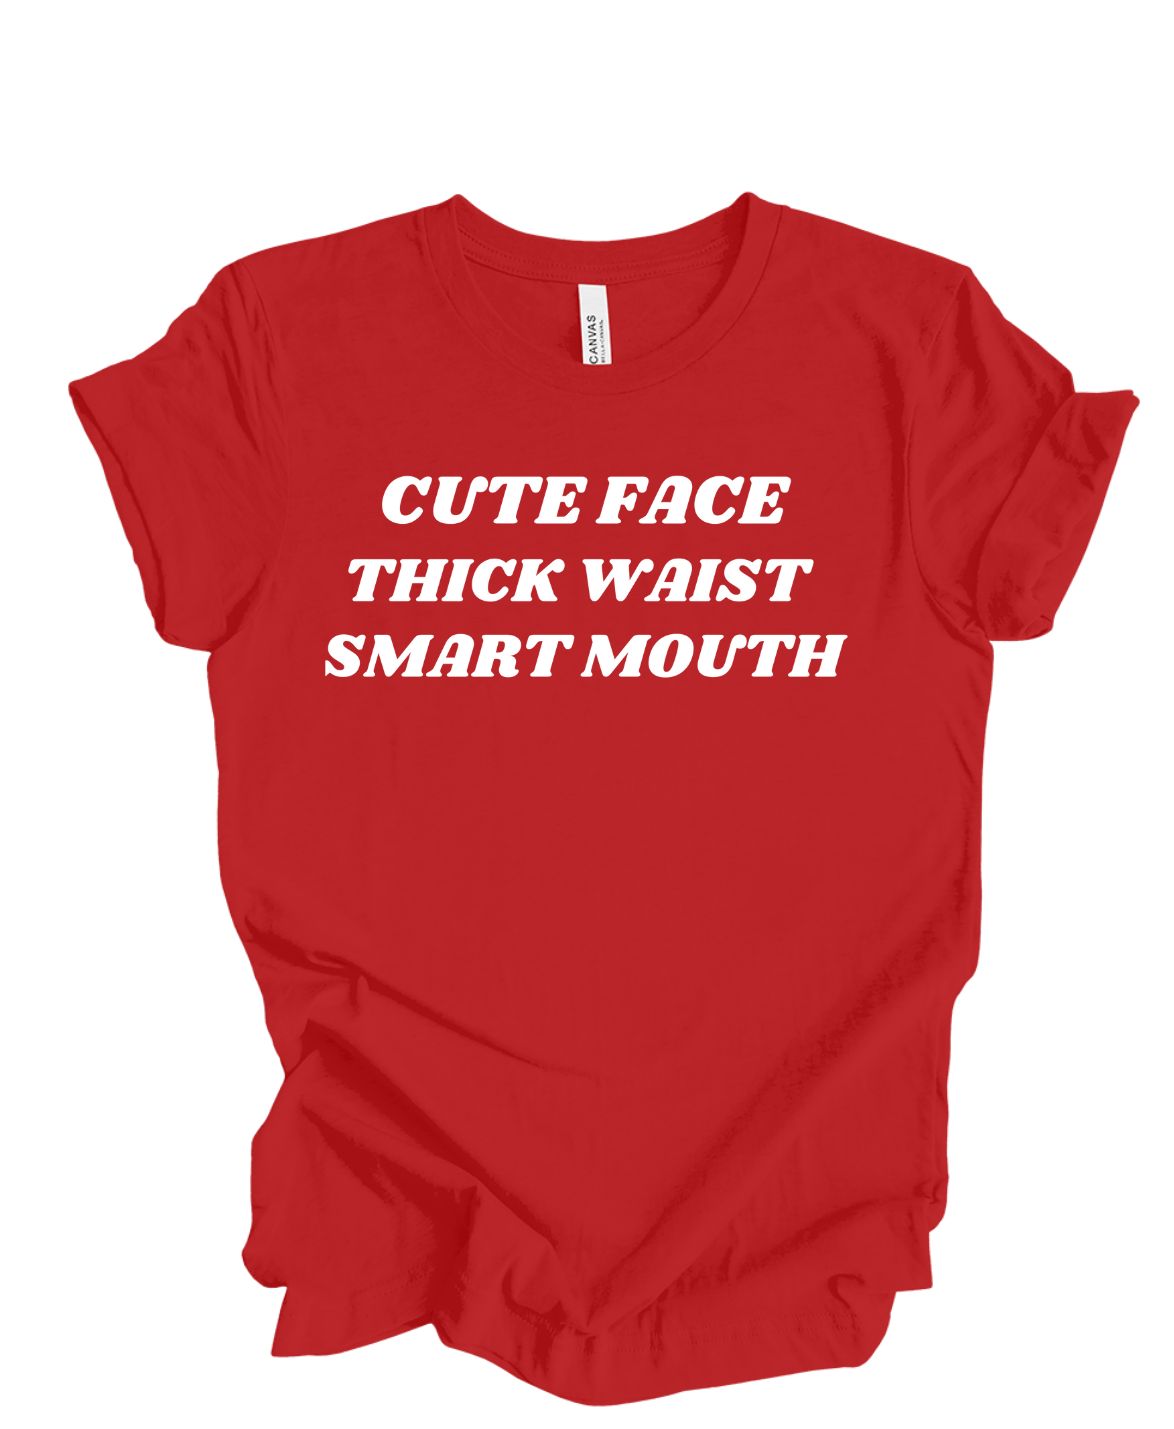 Cute Face ,Thick Waist, Smart Mouth T-Shirt